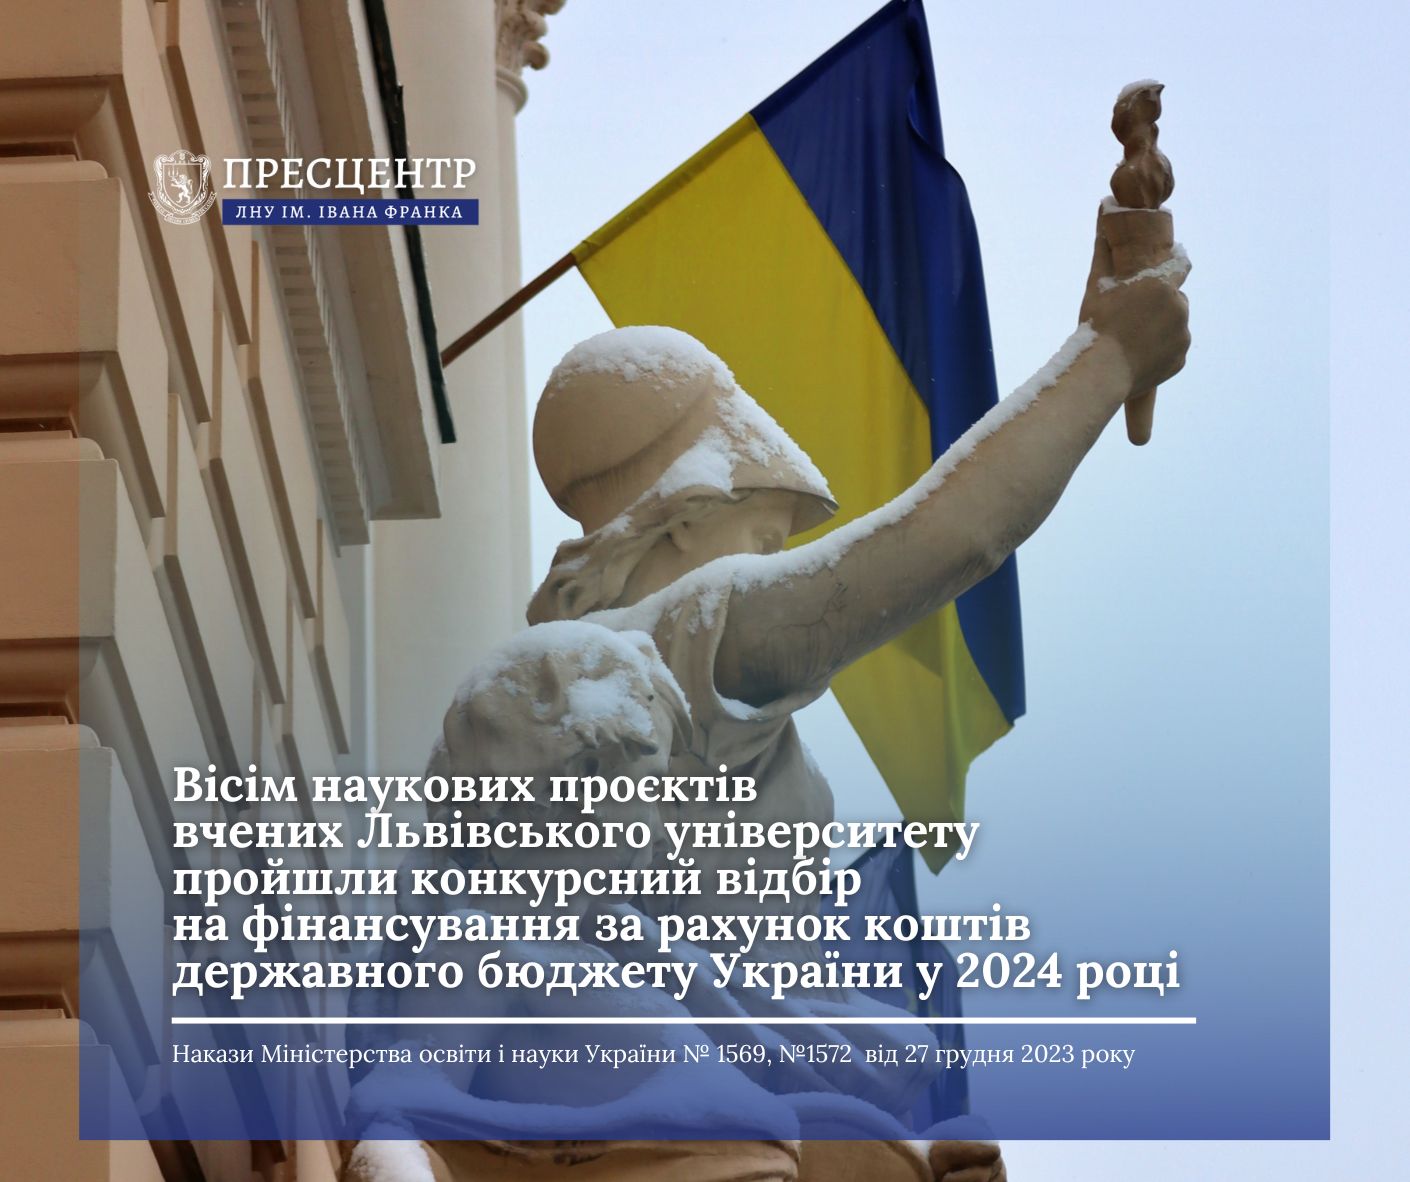 Вісім наукових проєктів вчених Університету пройшли конкурсний відбір на фінансування за рахунок коштів державного бюджету України у 2024 році